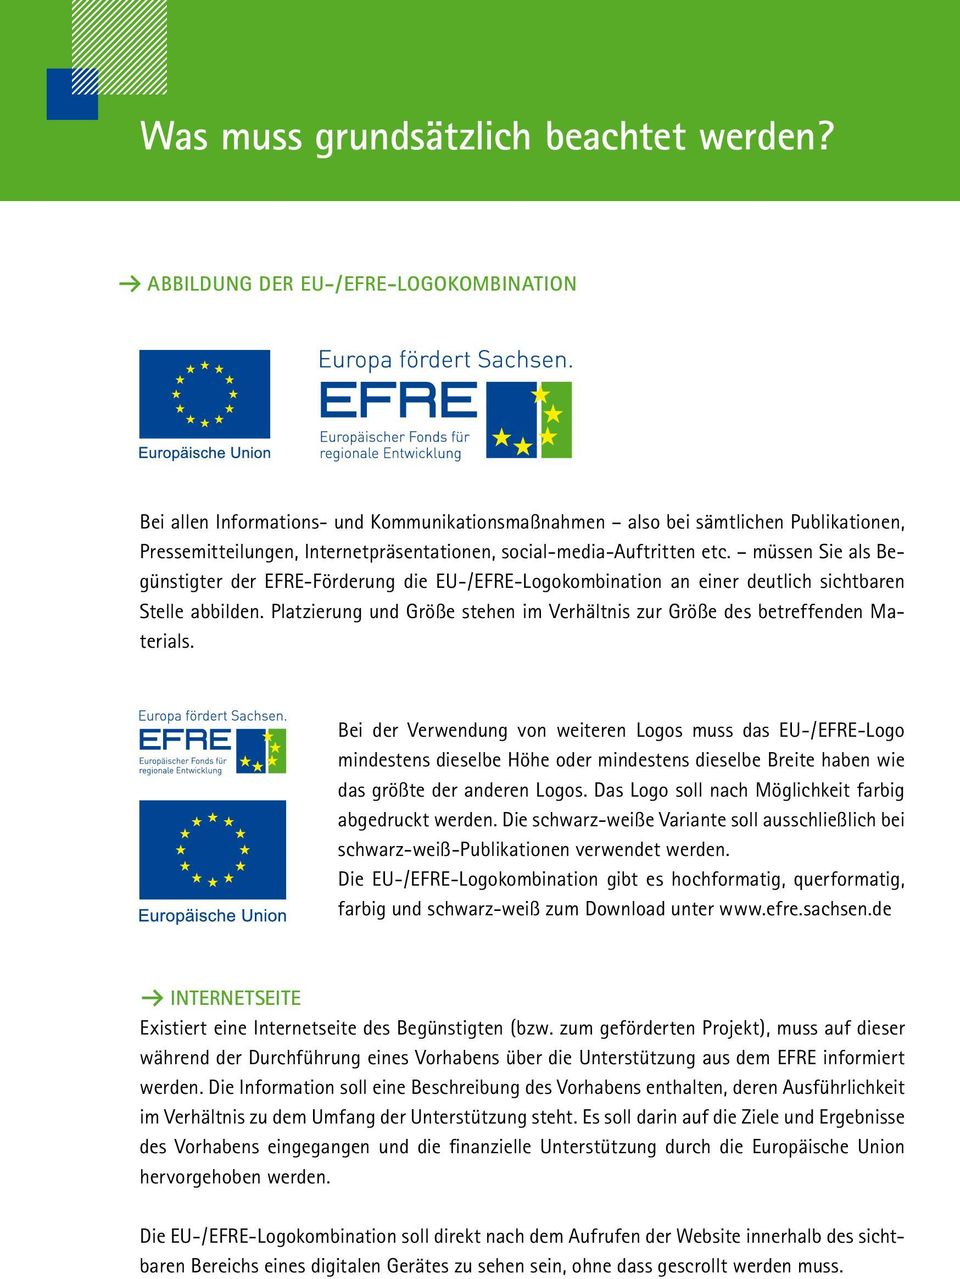 müssen Sie als Begünstigter der EFRE-Förderung die EU-/EFRE-Logokombination an einer deutlich sichtbaren Stelle abbilden.